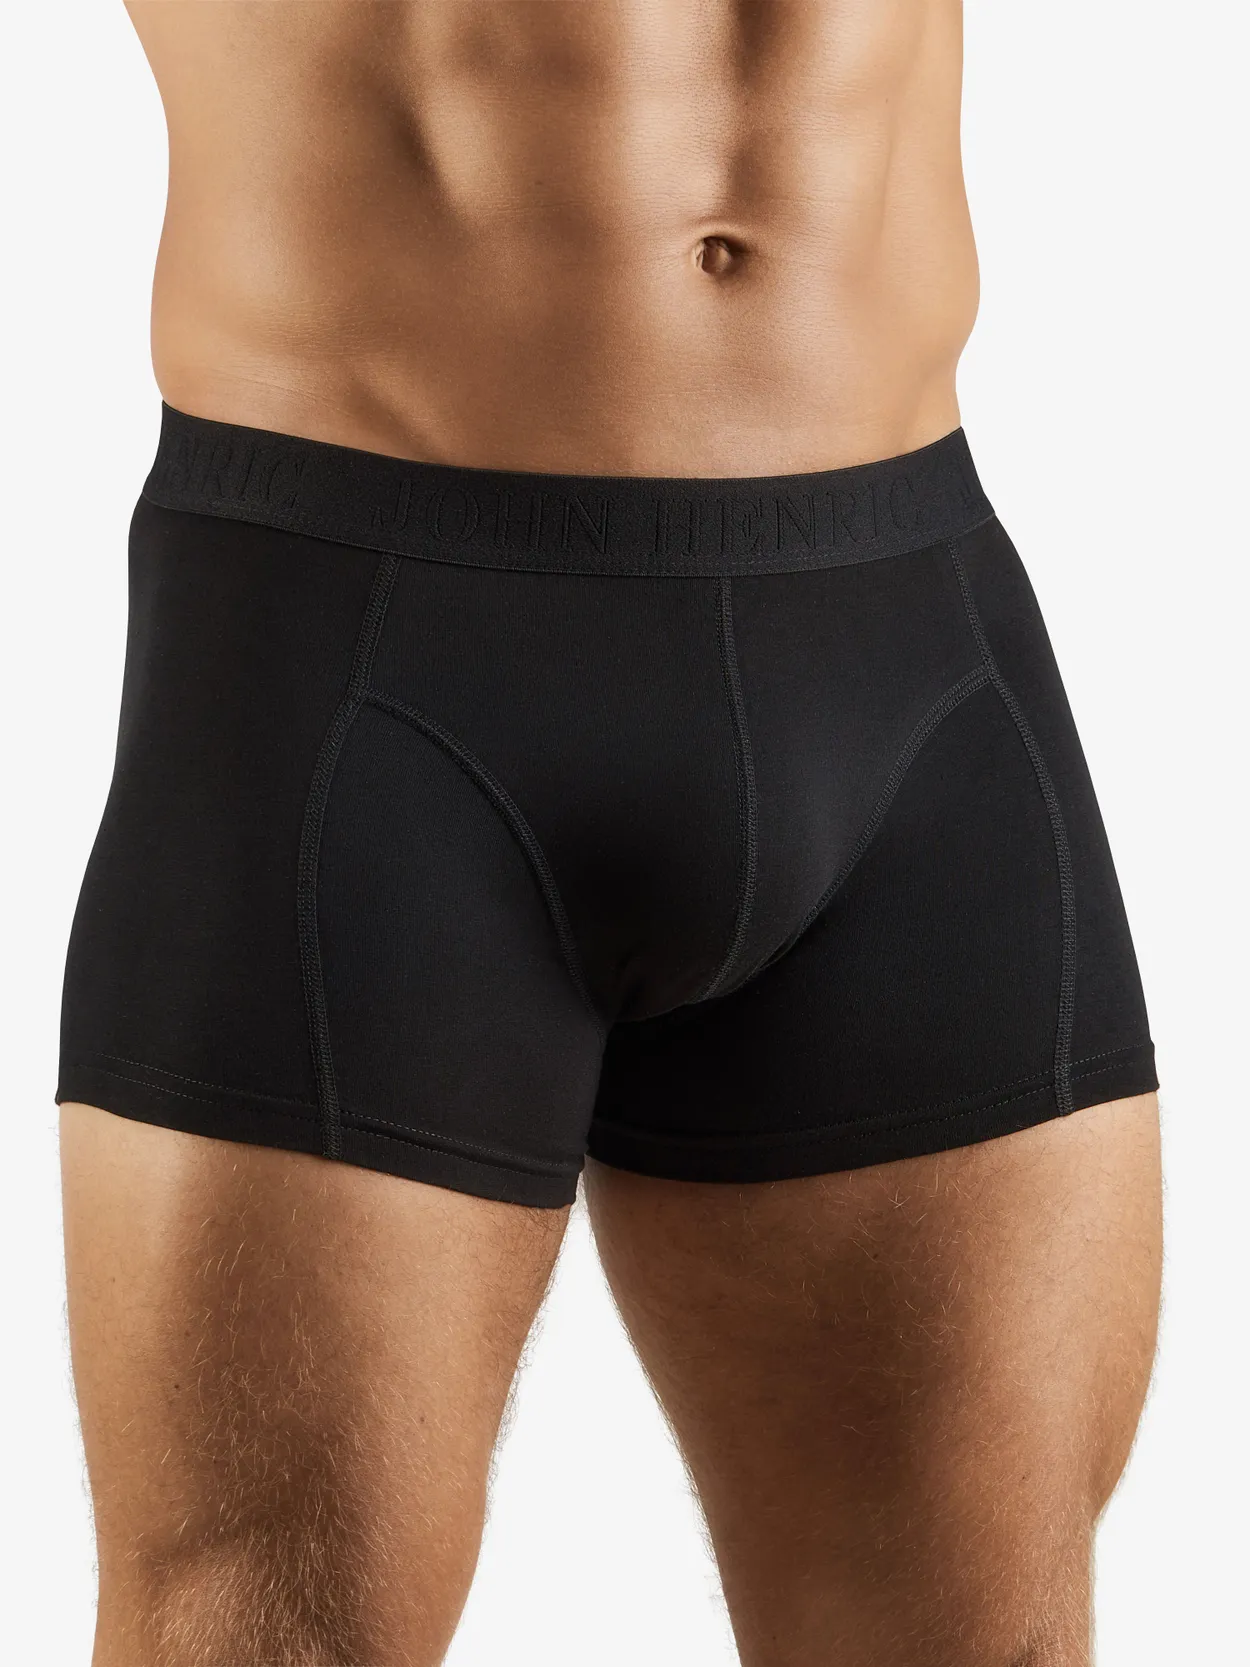 Buy Men's Black Boxer Shorts, Black Boxer Briefs